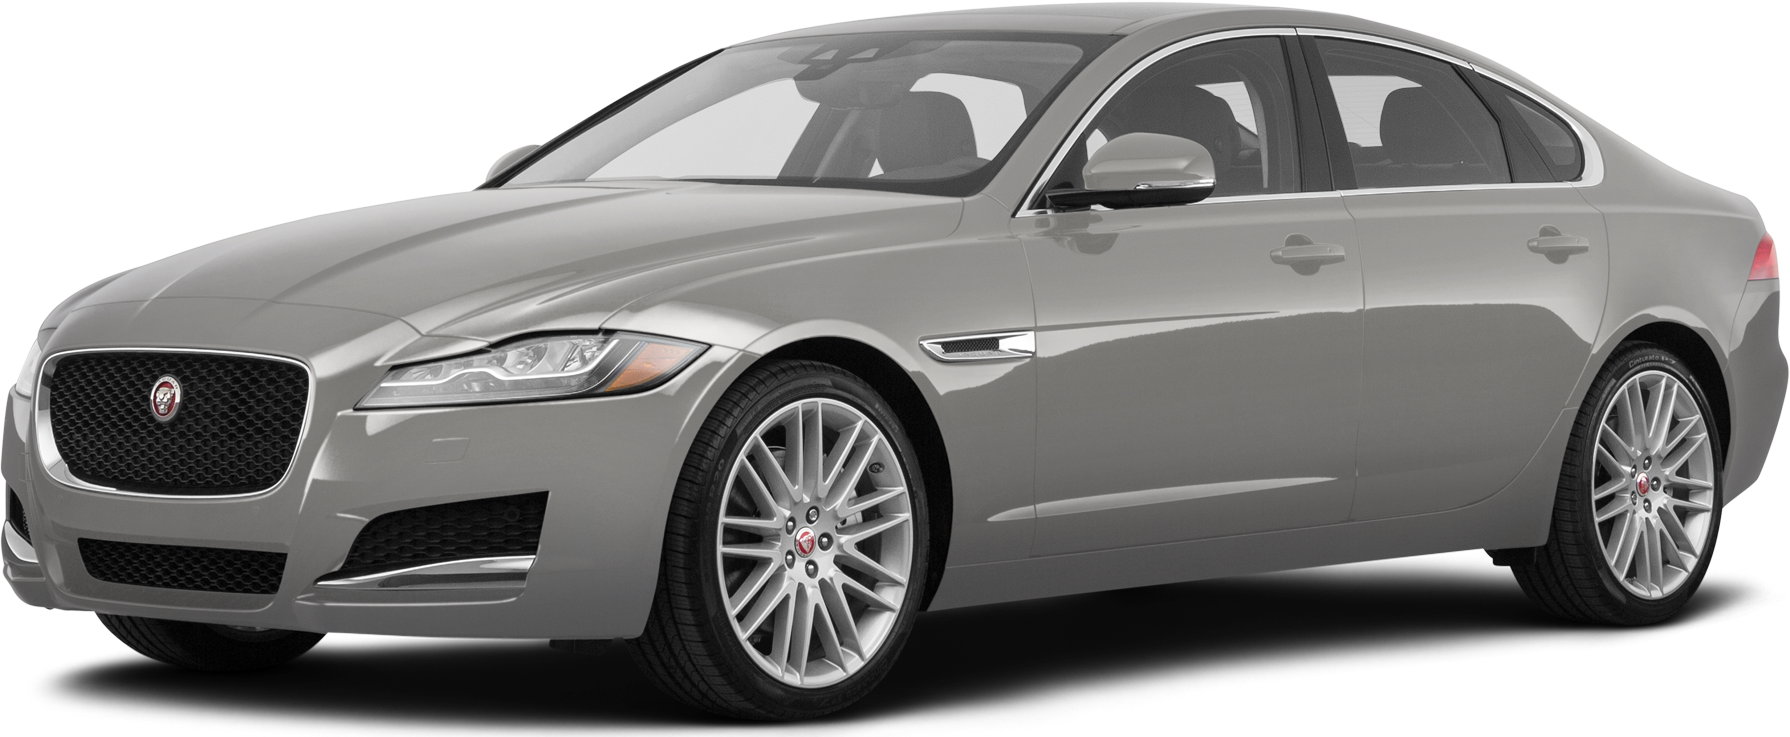 2019 Jaguar XF Price, Value, Ratings & Reviews